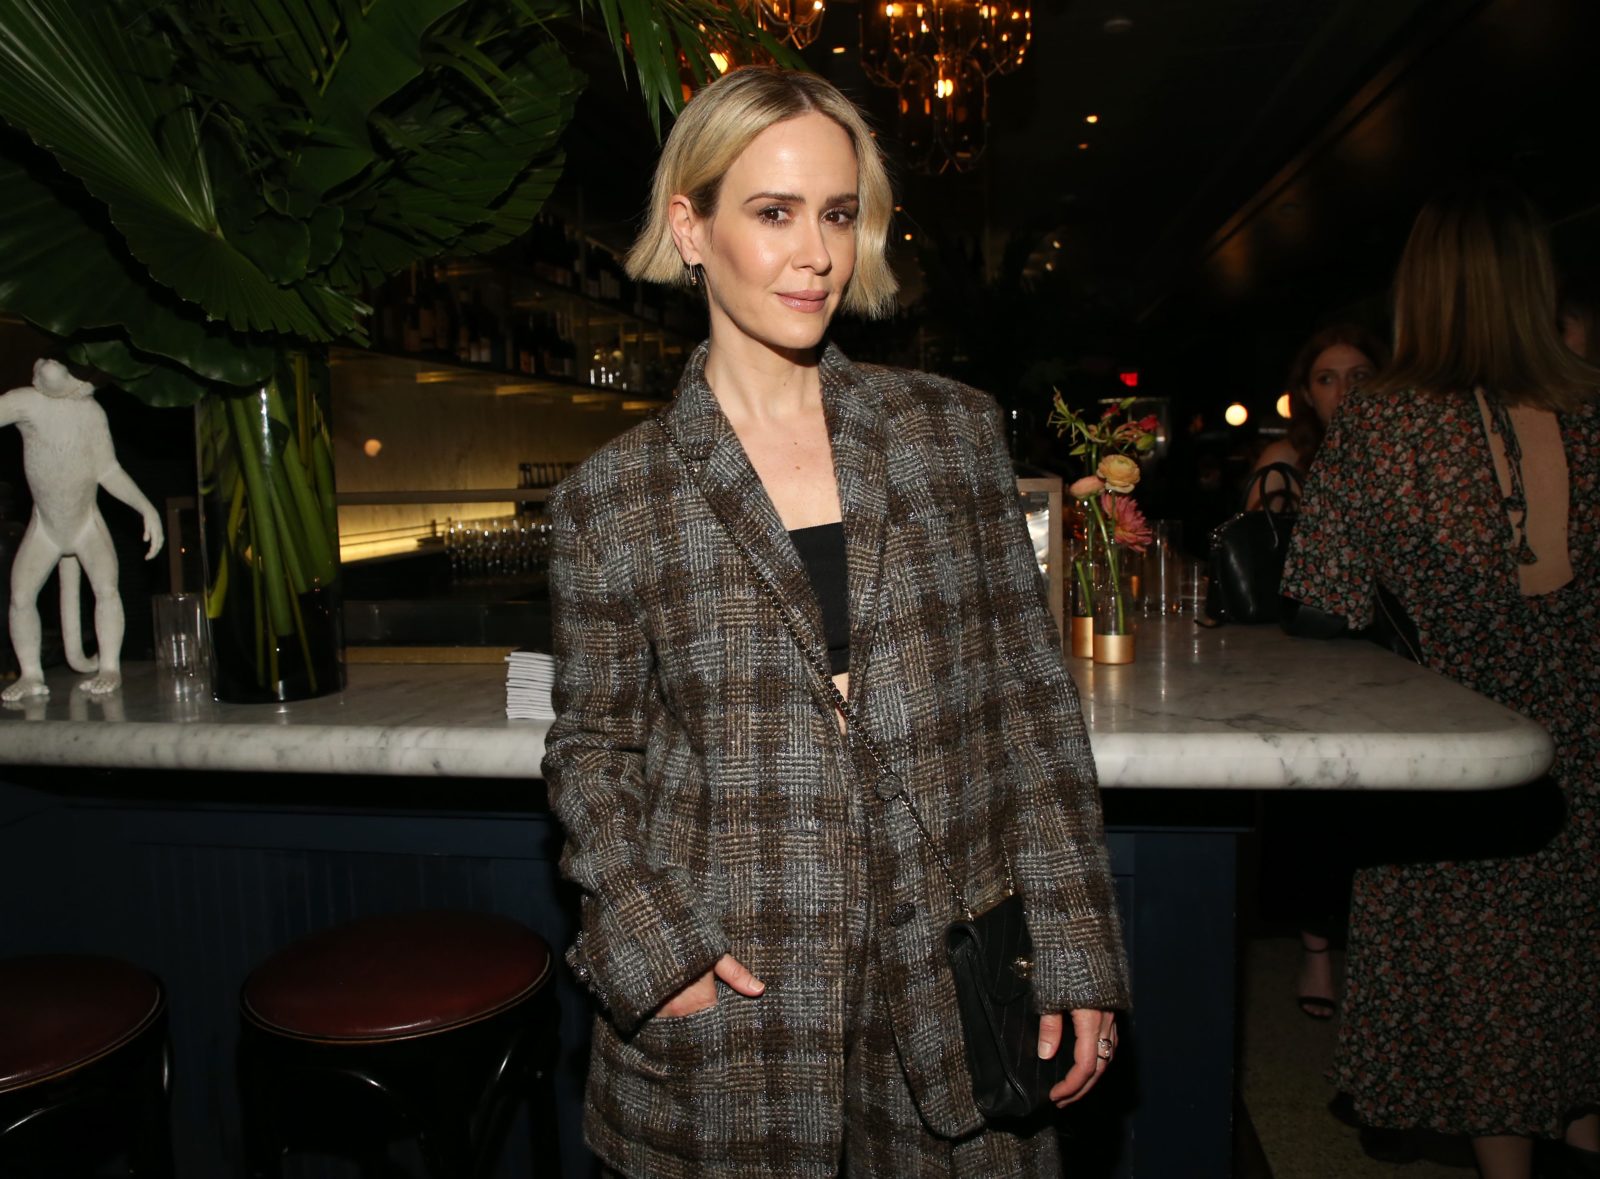 TIFF 2019: Inside the Chanel & Variety Female Filmmaker Dinner ...